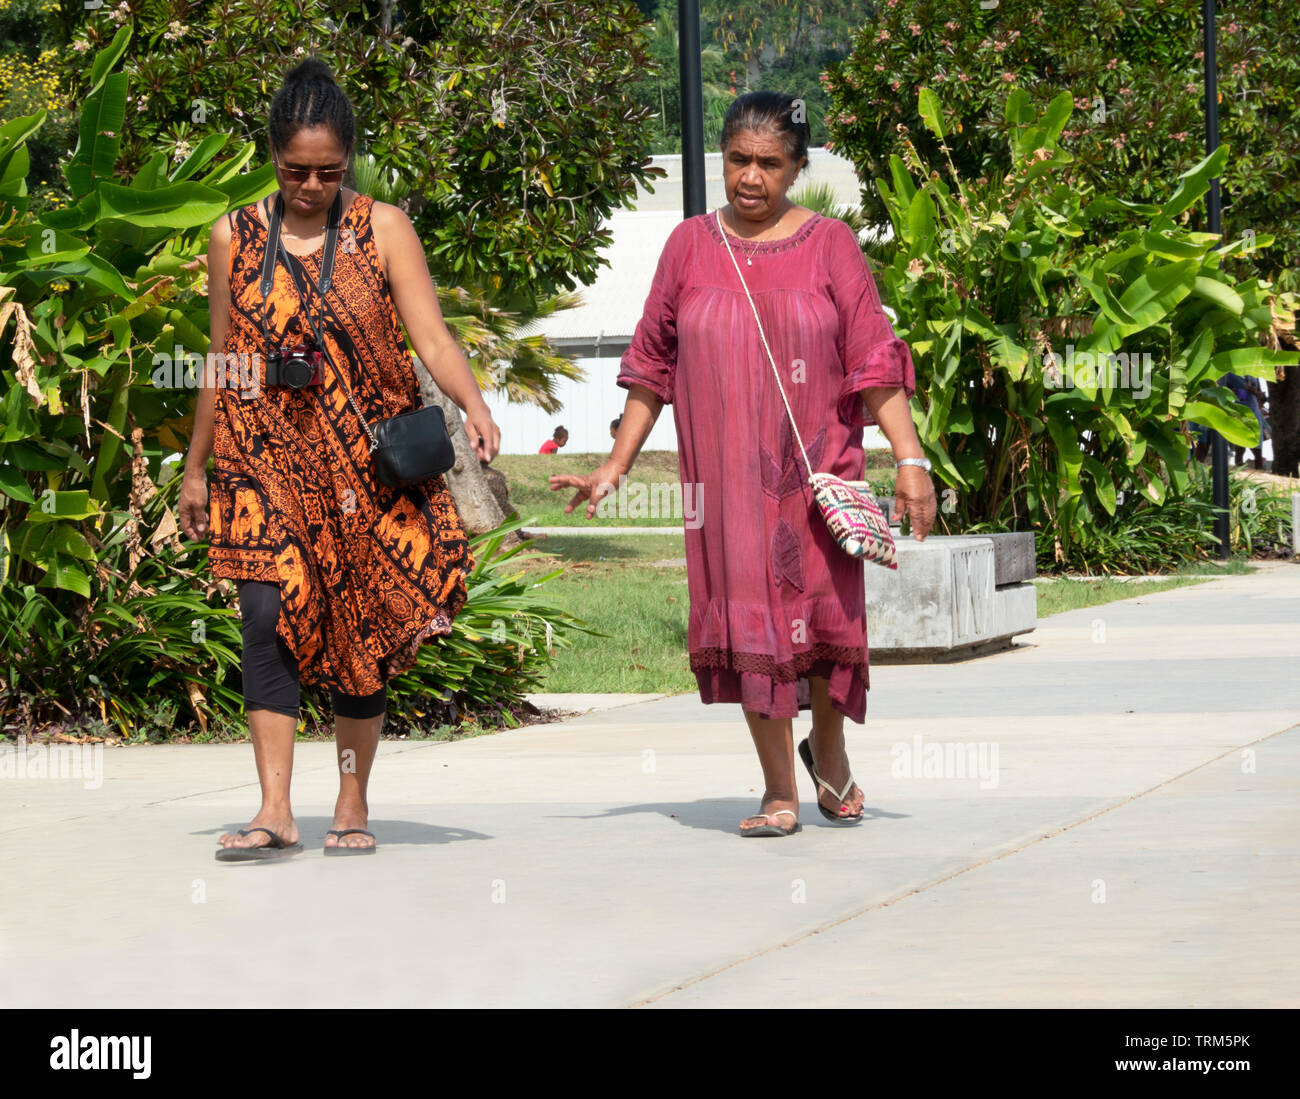 Ehrliches Porträt von zwei MELANESISCHEN Frauen gehen in einen Park, Port Vila, Efate Island, Vanuatu, Melanesien Stockfoto